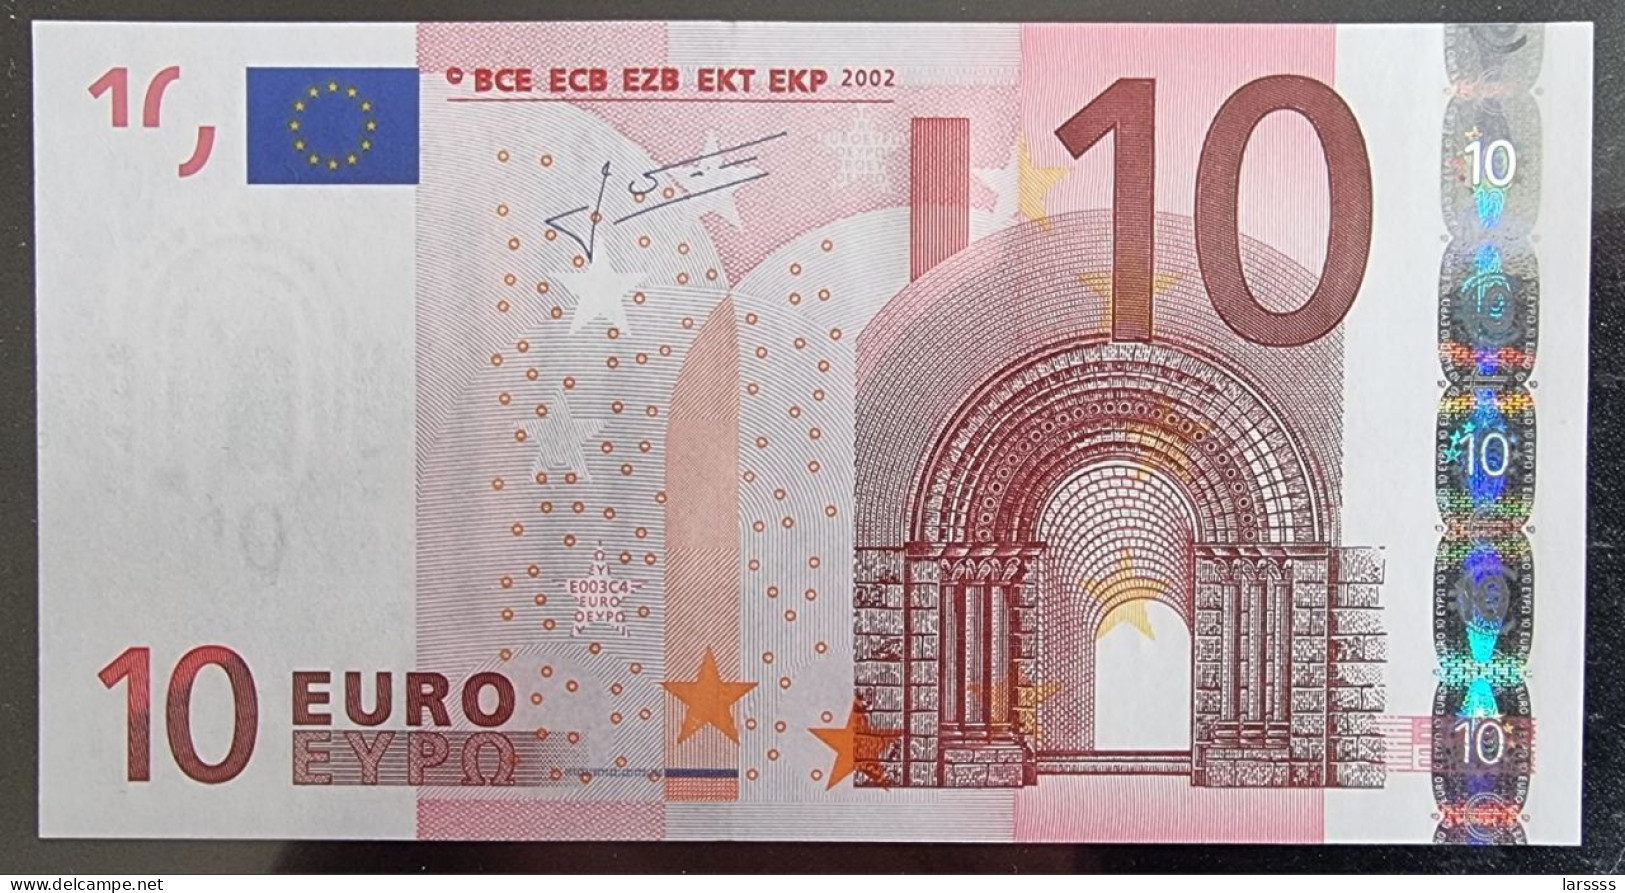 1 X 10€ Euro Draghi E003C4 X65315617778 - UNC - 10 Euro